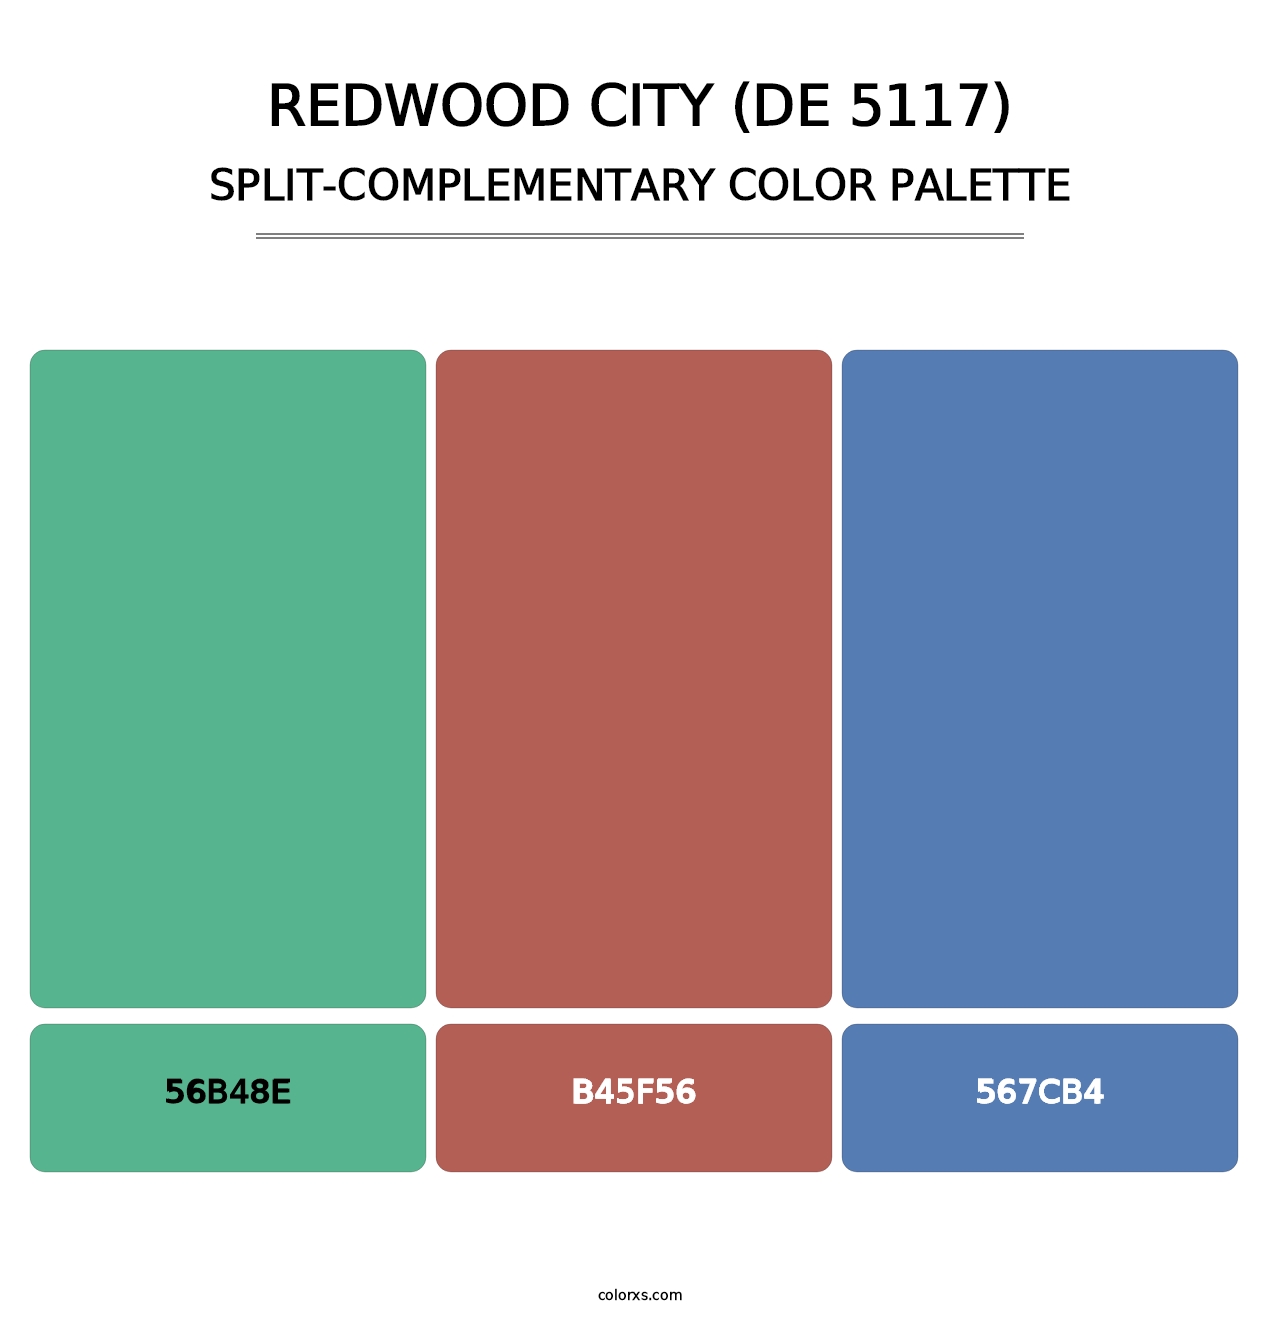 Redwood City (DE 5117) - Split-Complementary Color Palette